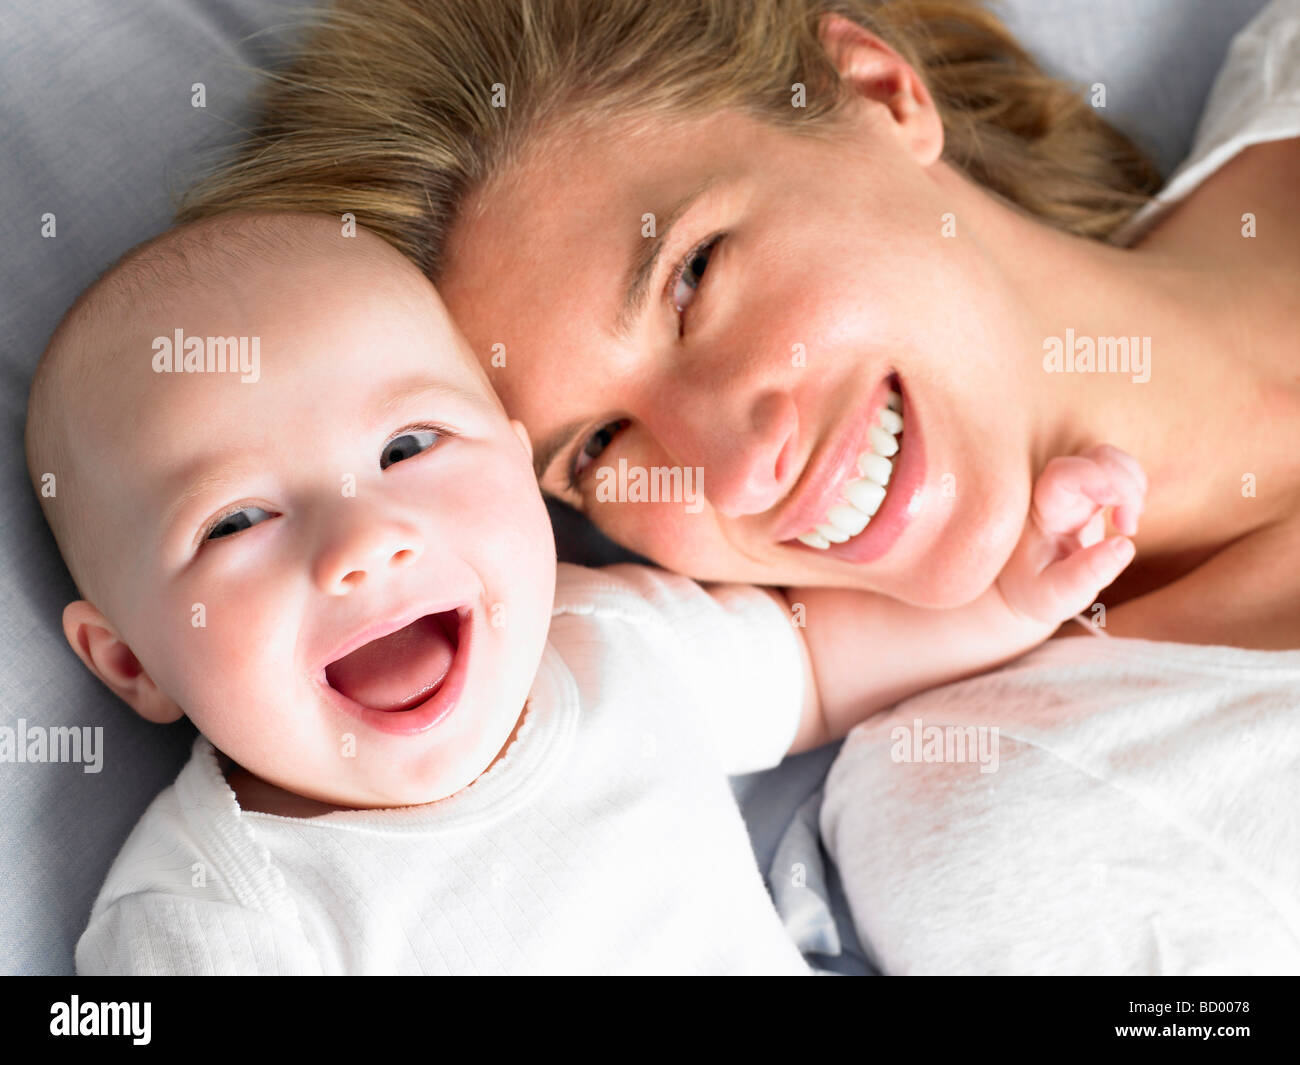 Il bambino e la madre sul letto, ripresa dall'alto Foto Stock